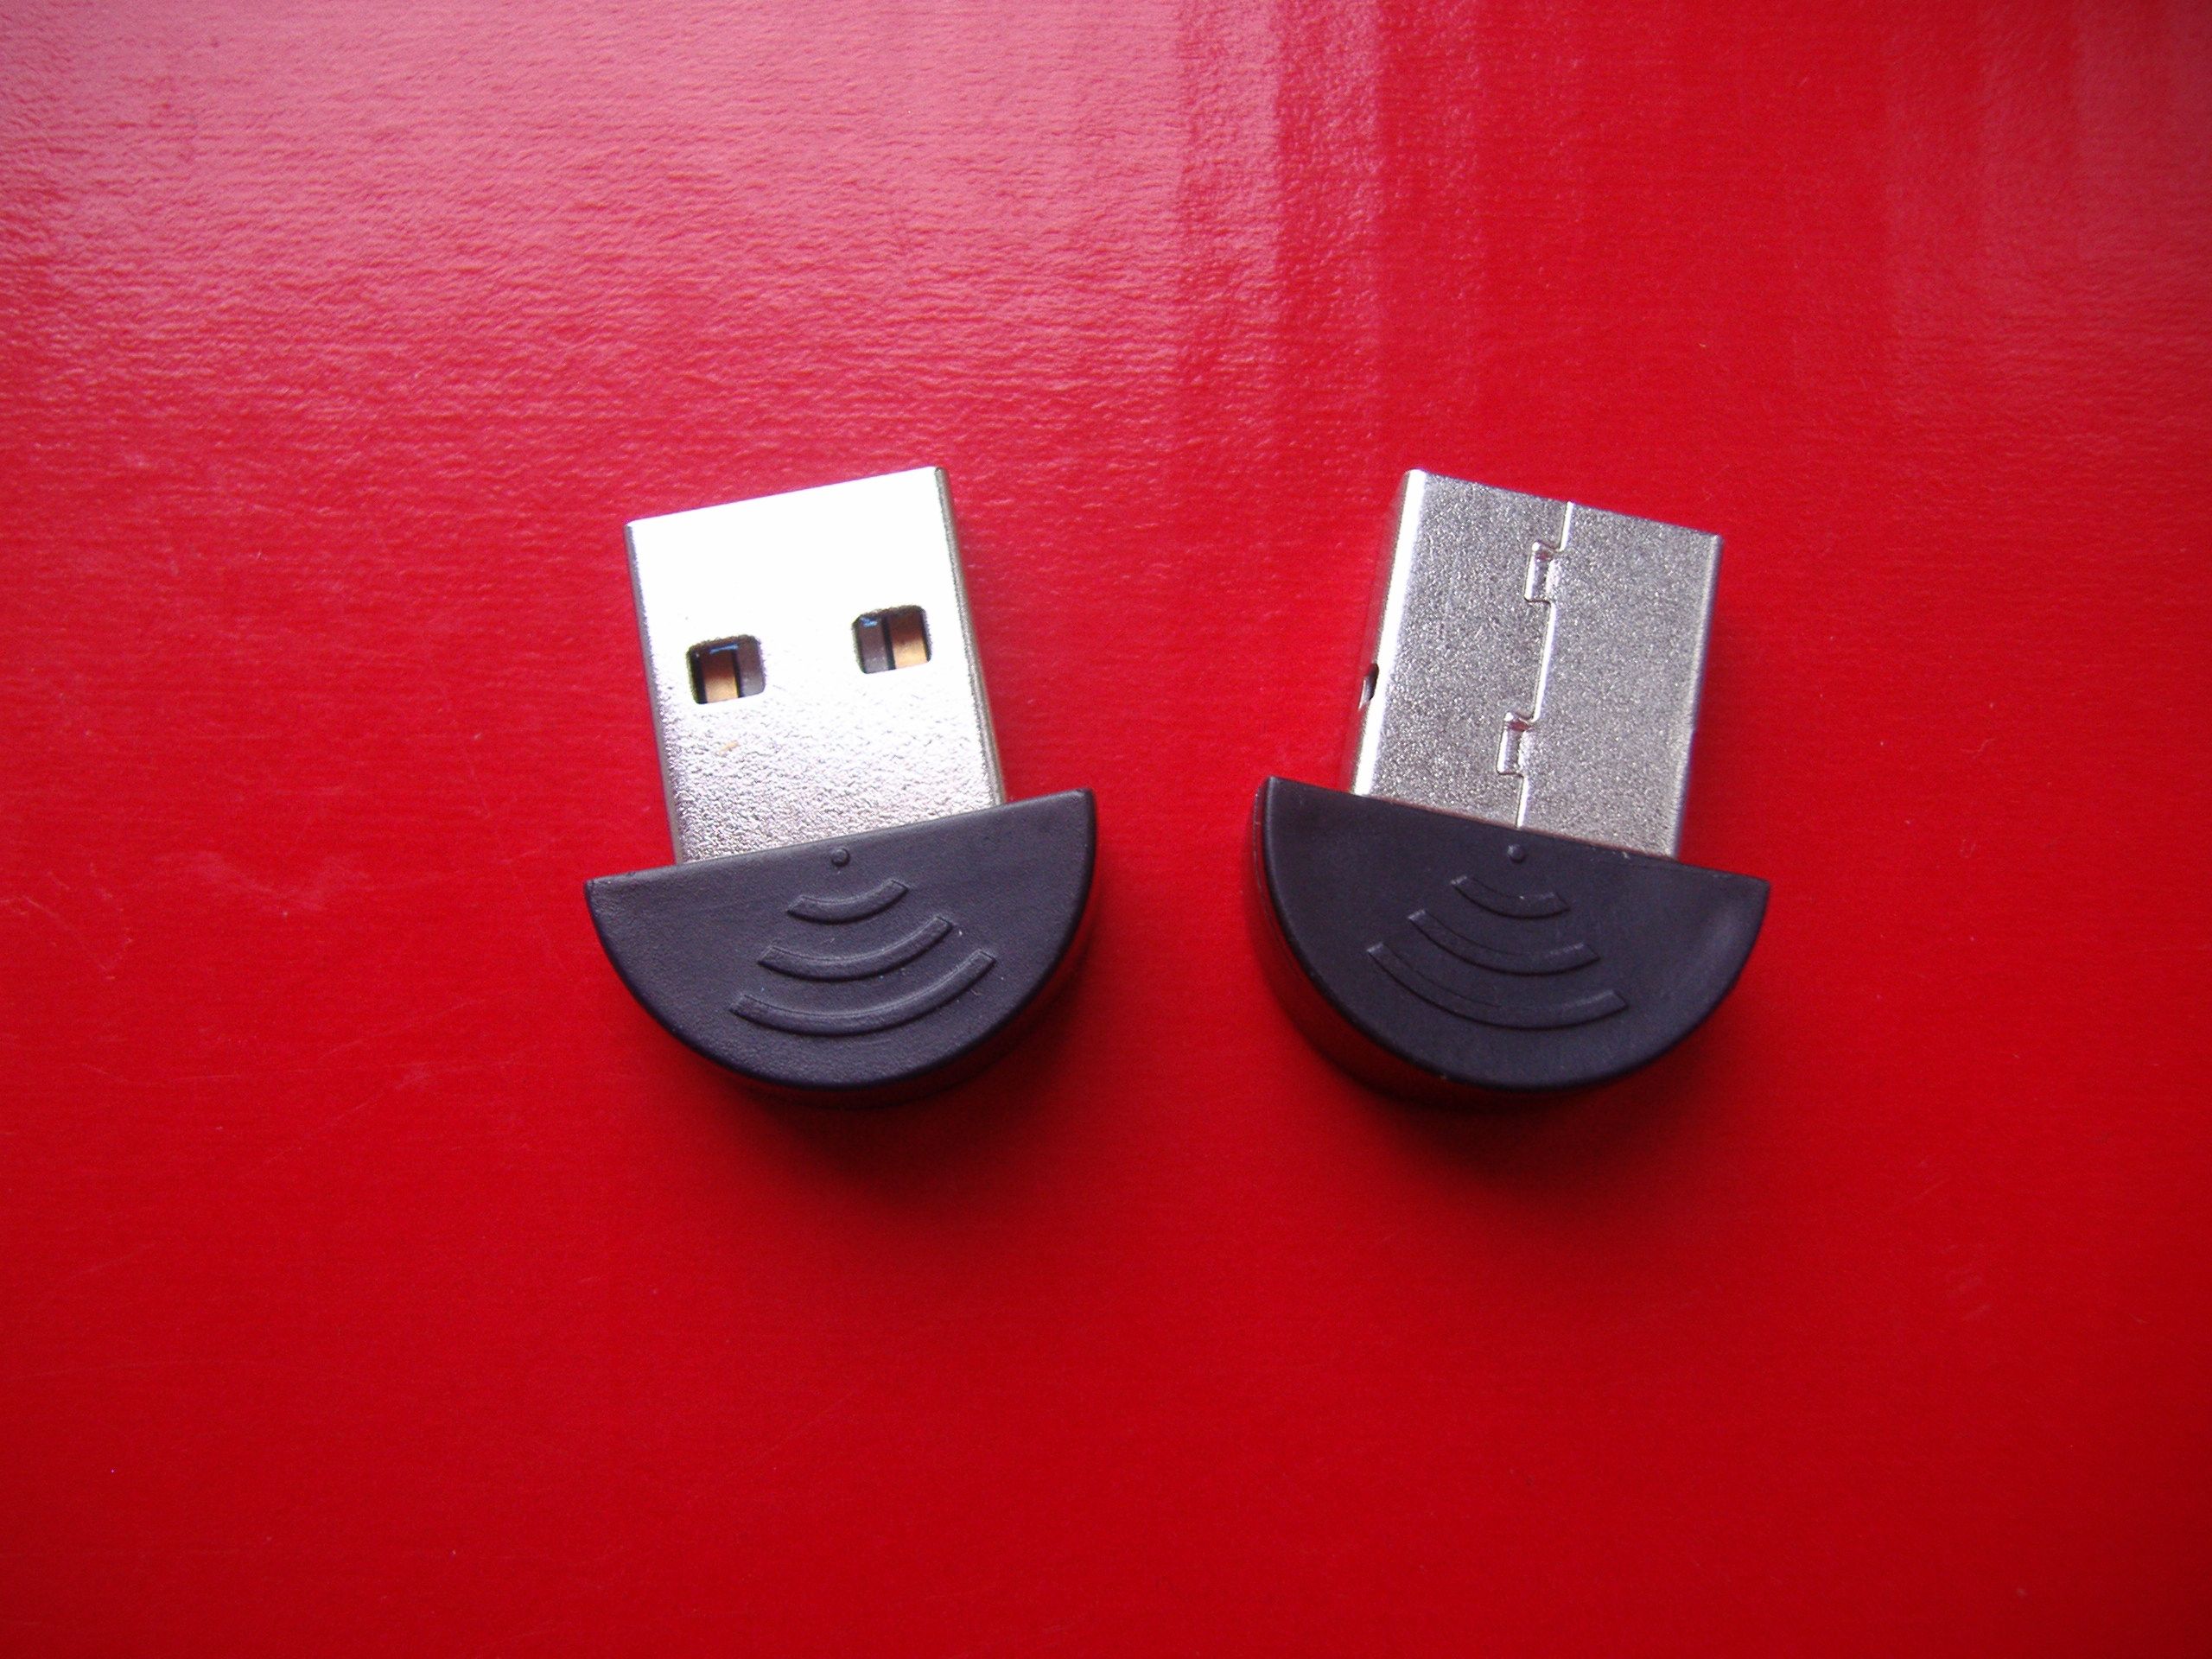 Блютуз USB Bluetooth 2.0 (грибочек) для компьютера или ноутбука